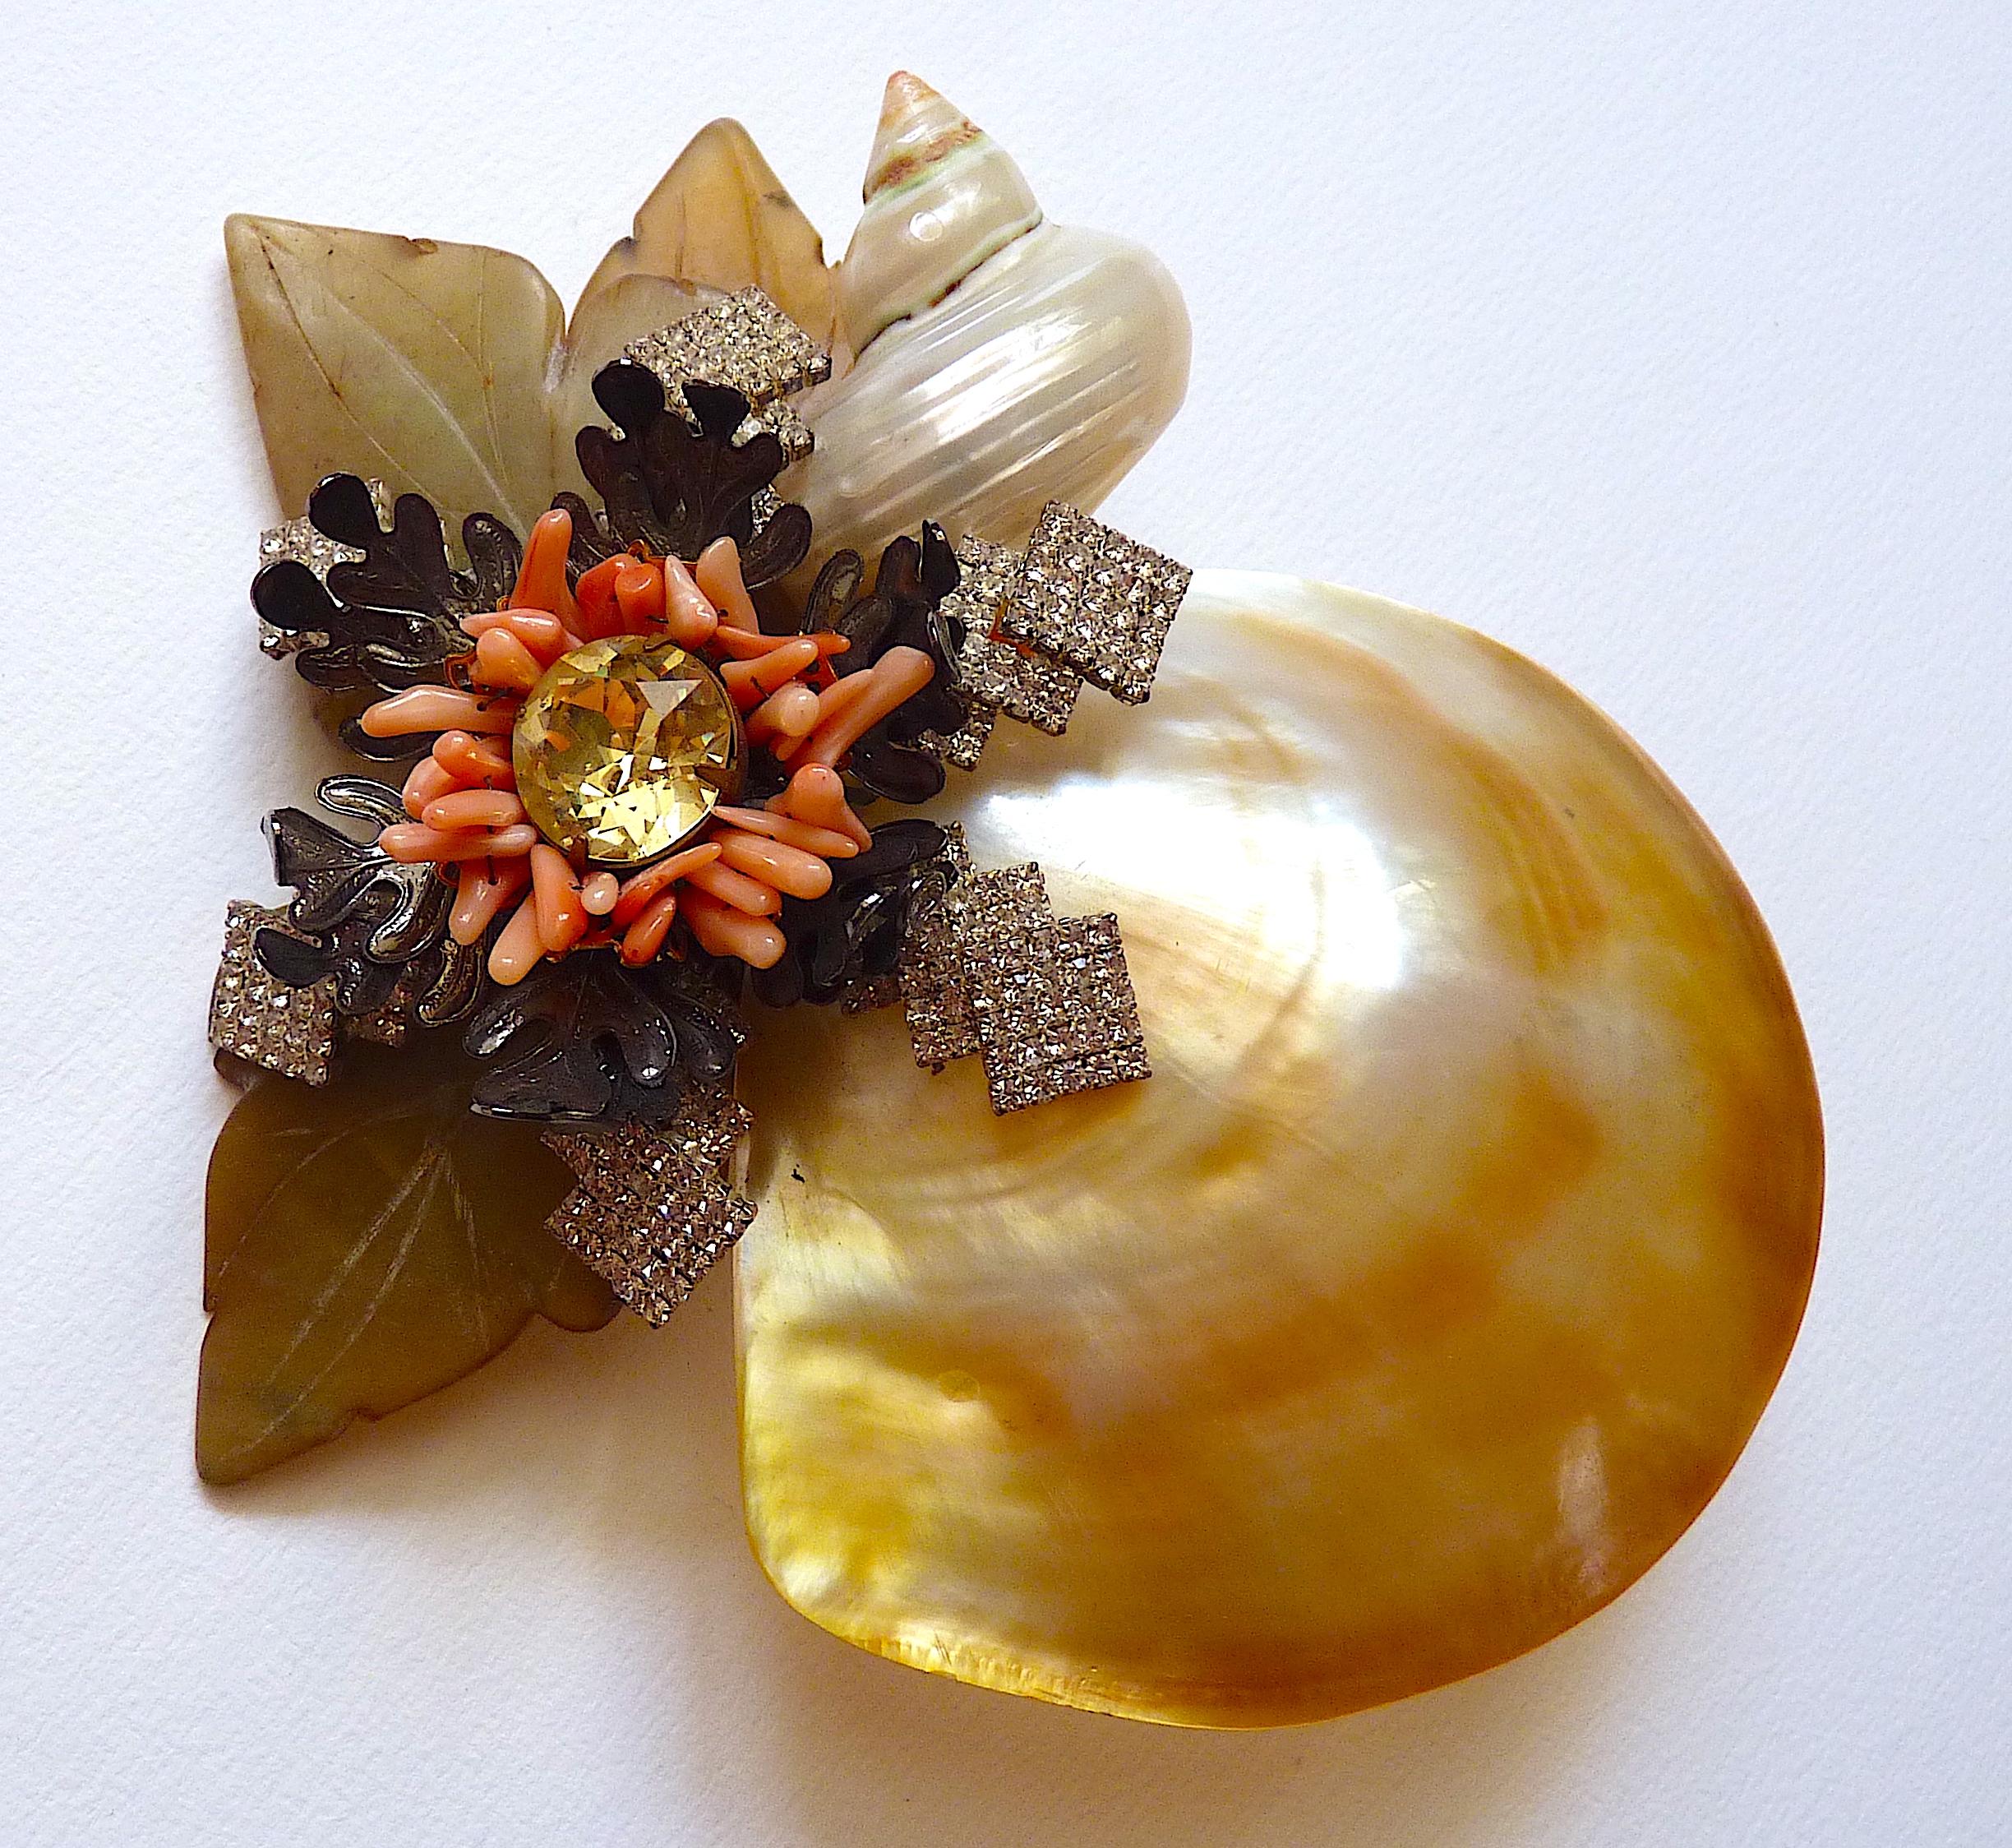 Voici une broche surdimensionnée de Lawrence Vrba, composée de coquilles d'huîtres, de coquillages, de cristal de verre et de perles de verre coulé, datant des années 1980.
VRBA a créé des bijoux sous son propre nom après avoir travaillé pour la